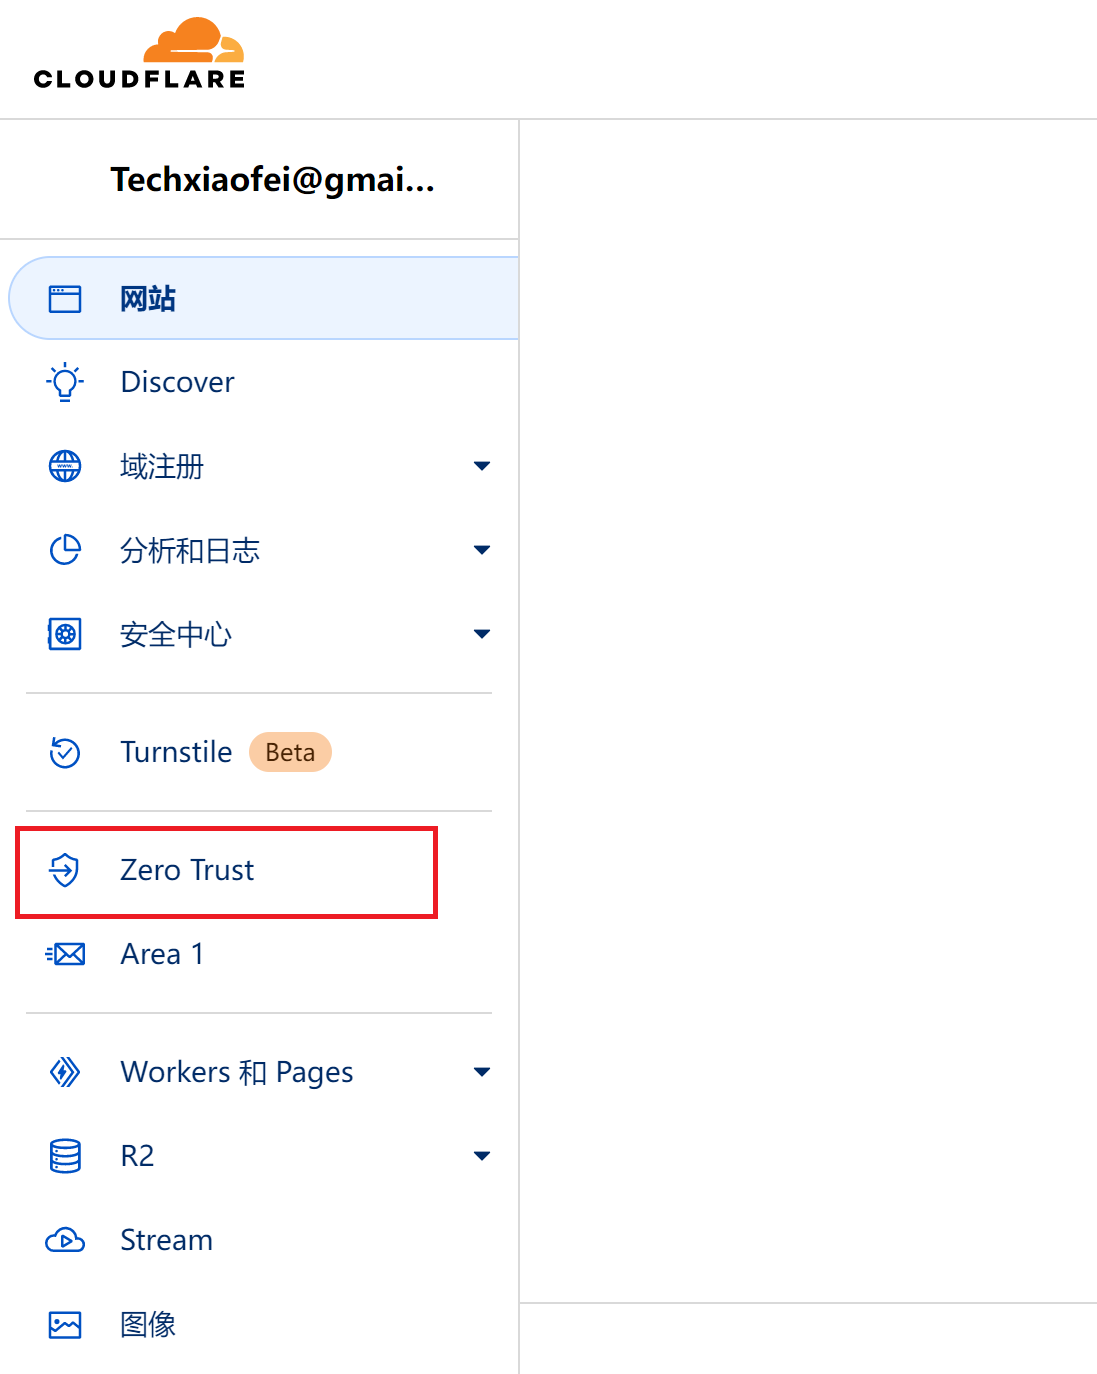 zero_trust